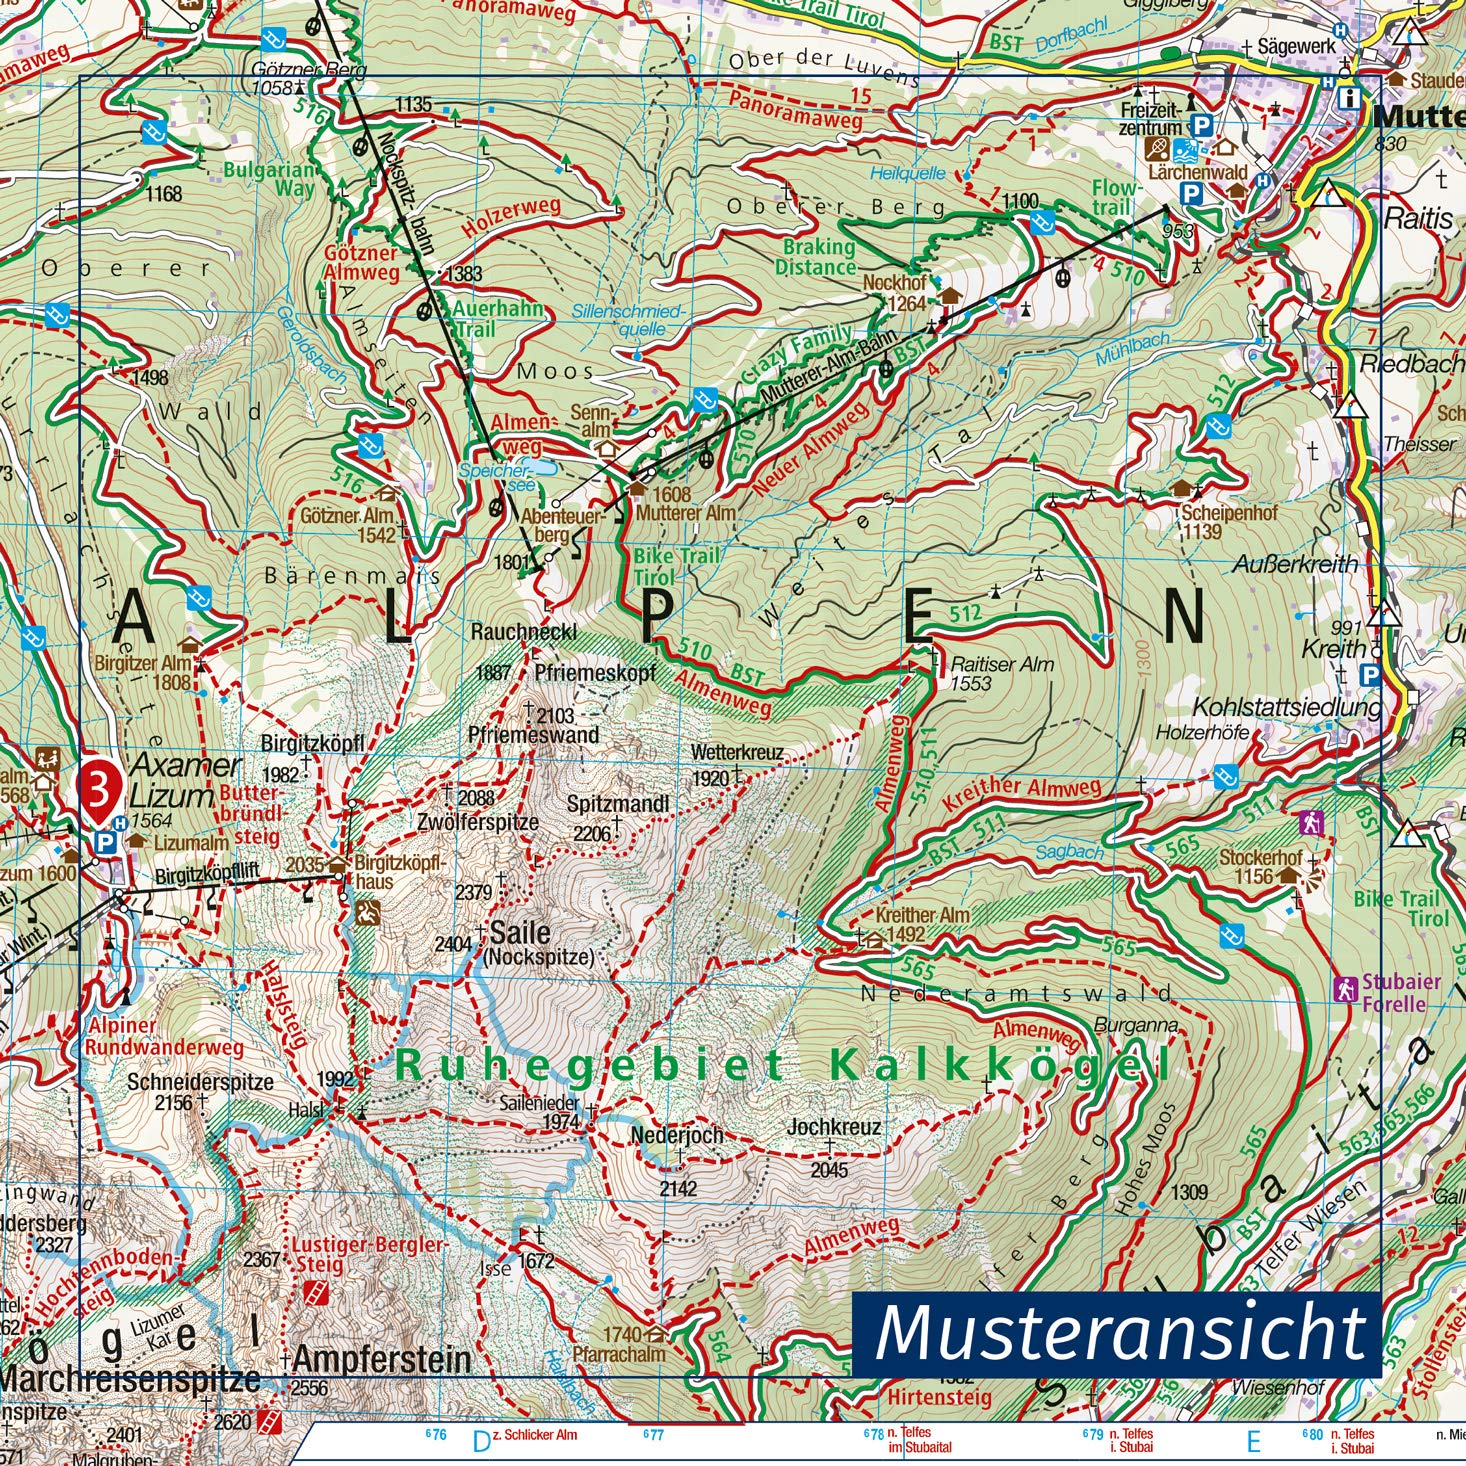 635 Hochpustertal/Alta Pusteria 1:25.000 - Kompass Wanderkarte